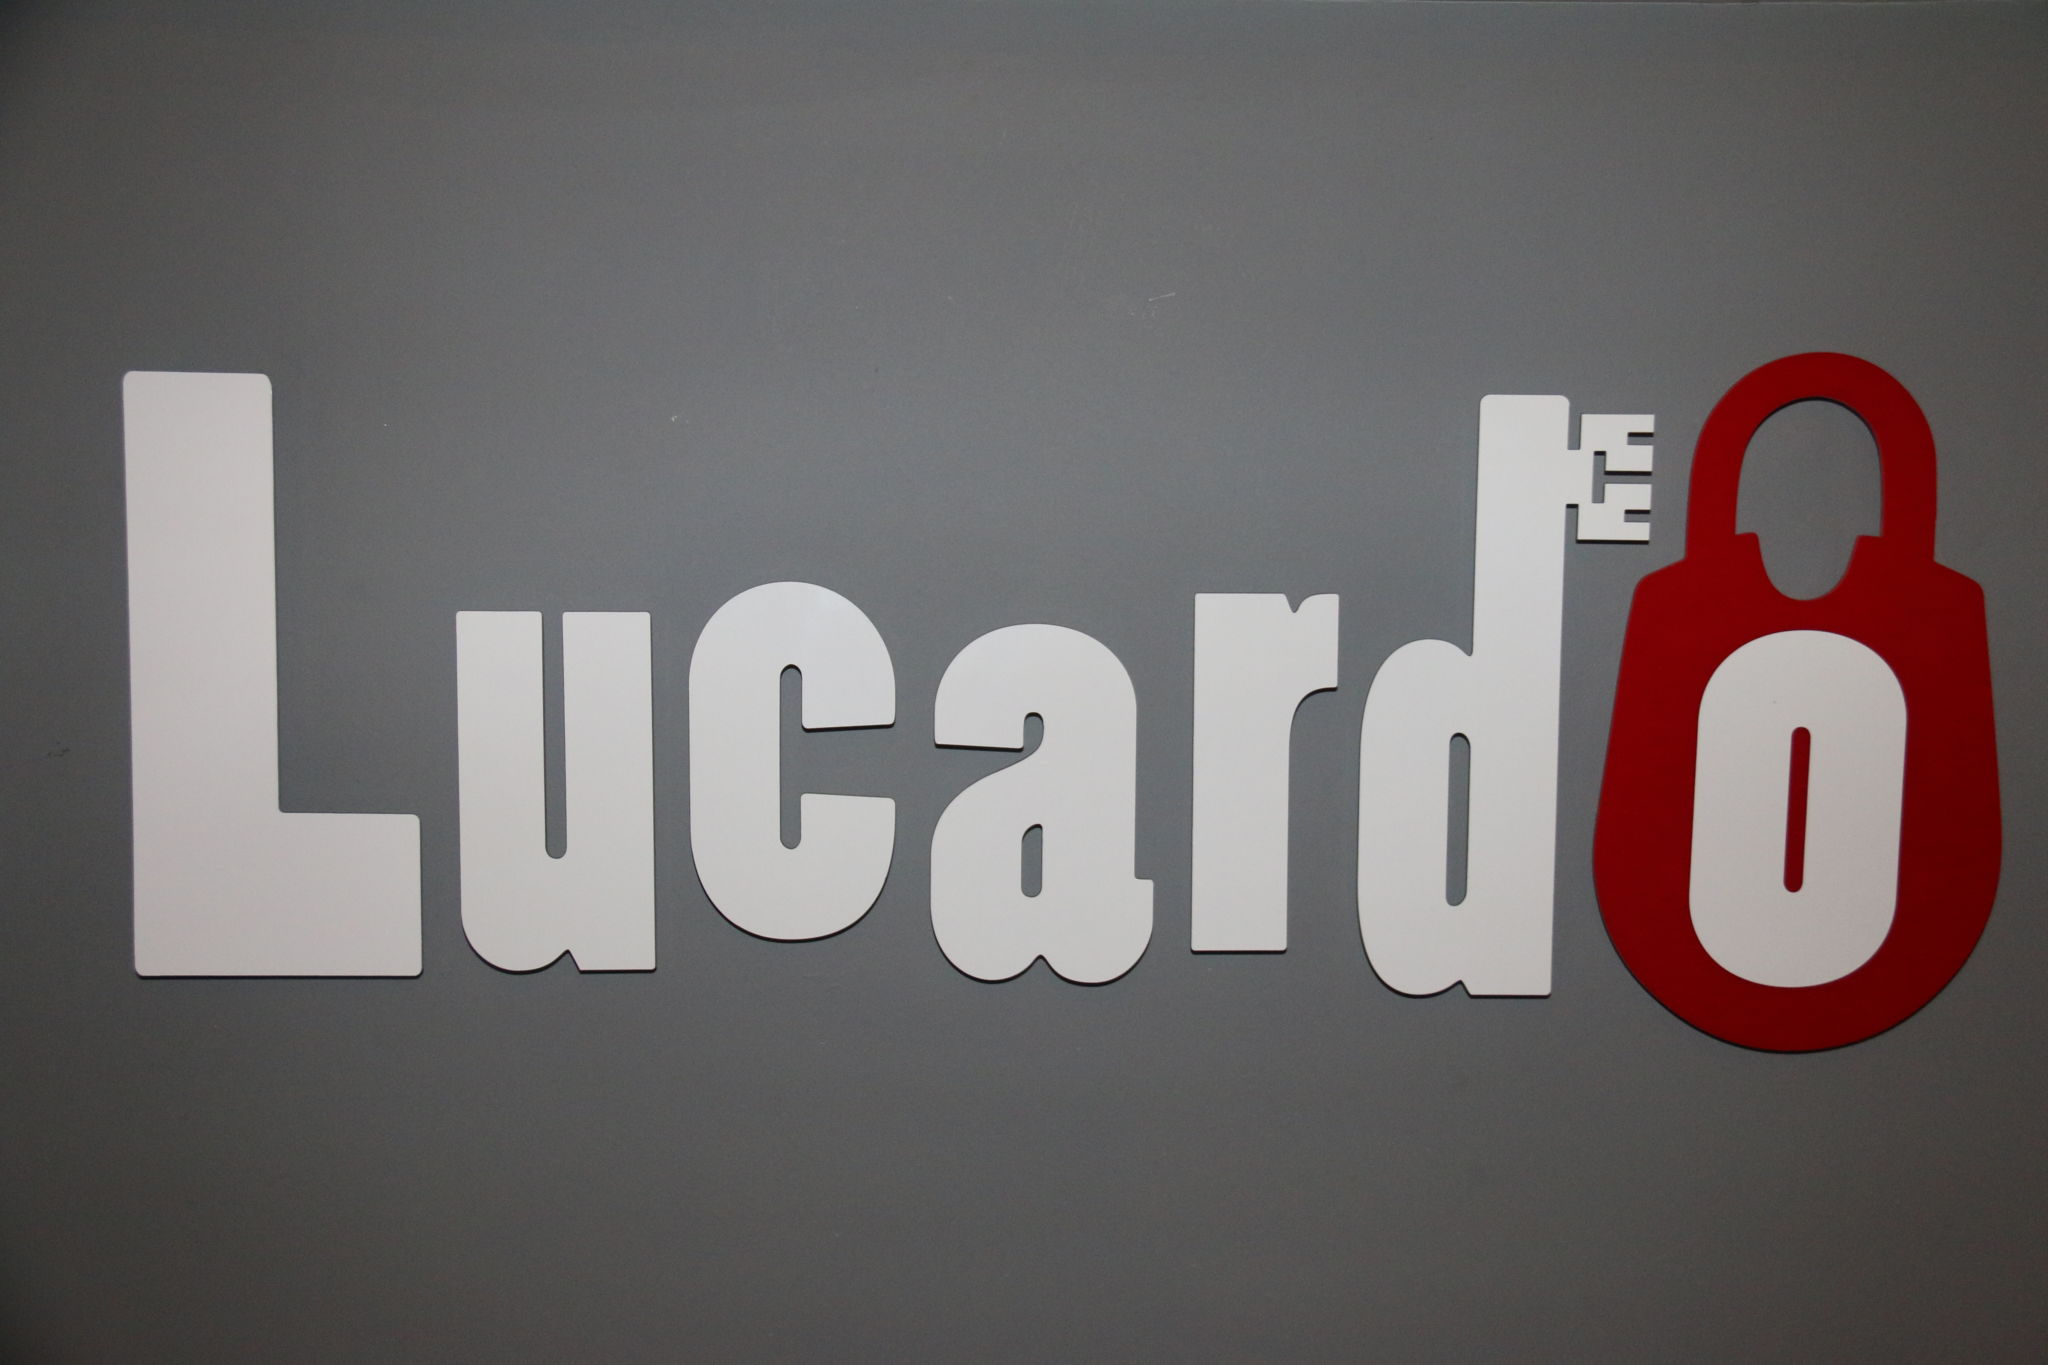 Lucardo Manchester, Live Action Escape Games